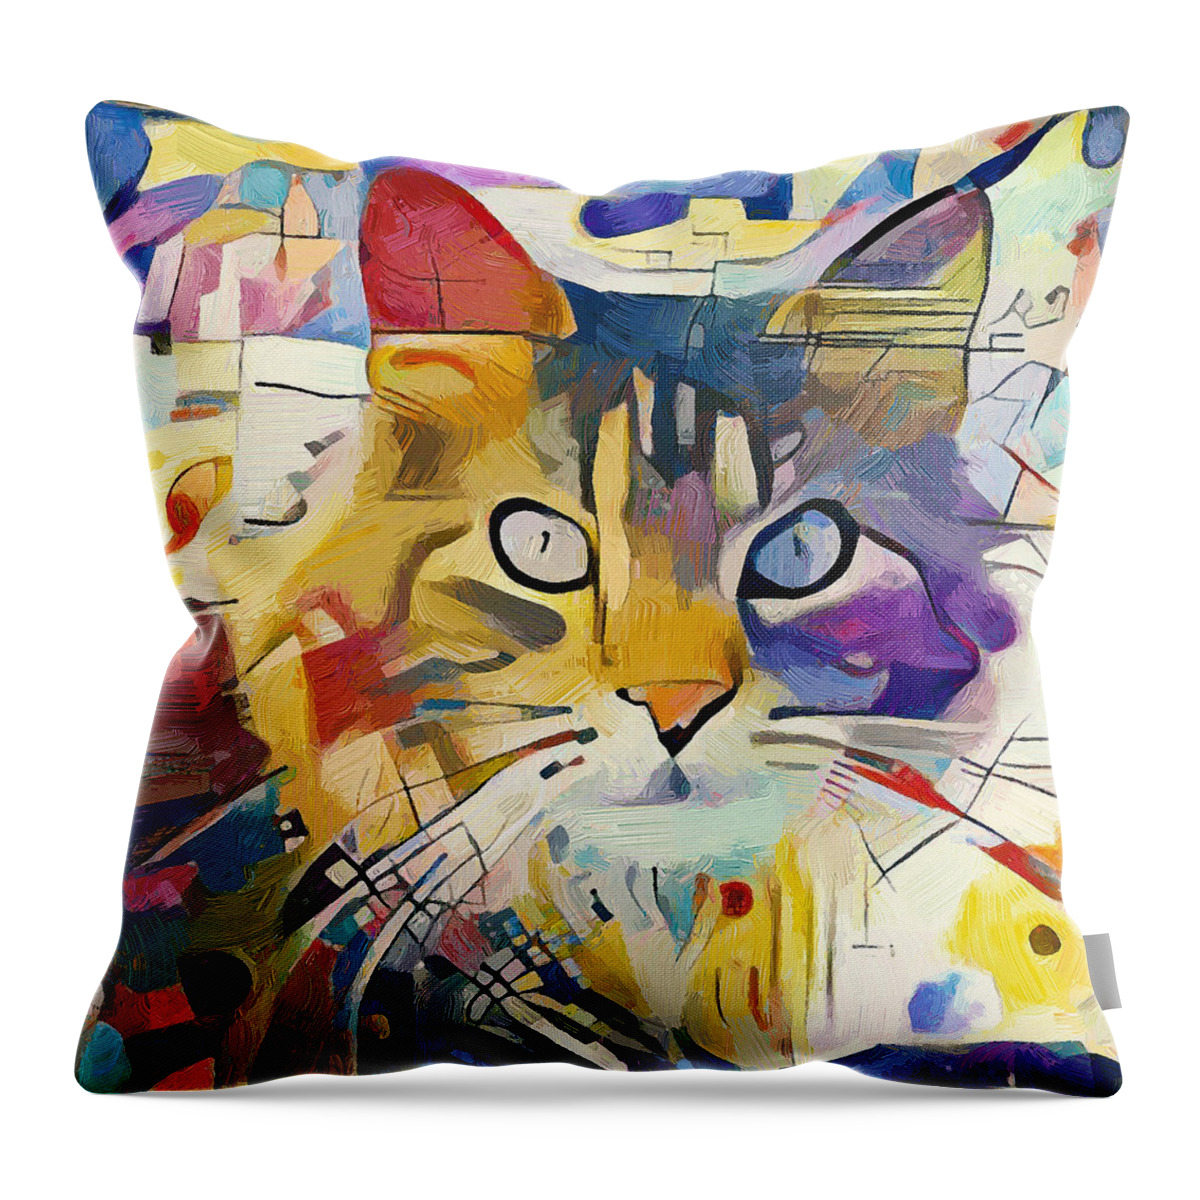 Kandinsky Throw Pillow featuring the digital art Kandinsky Cat by Yury Malkov